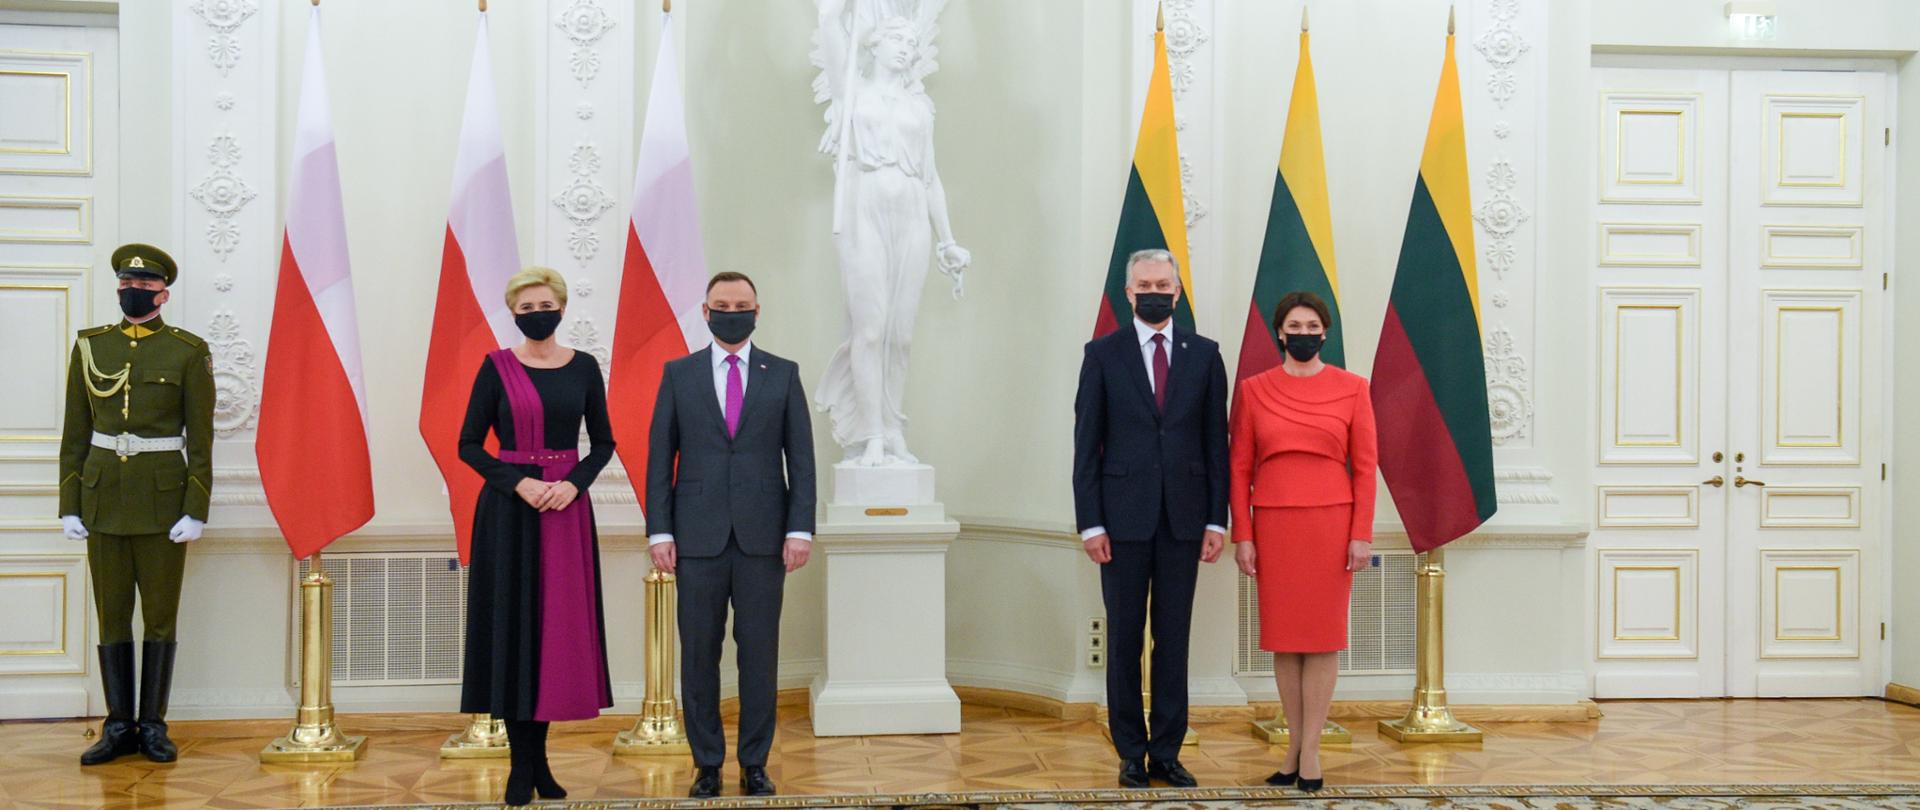 Prezydenci Polski i Litwy